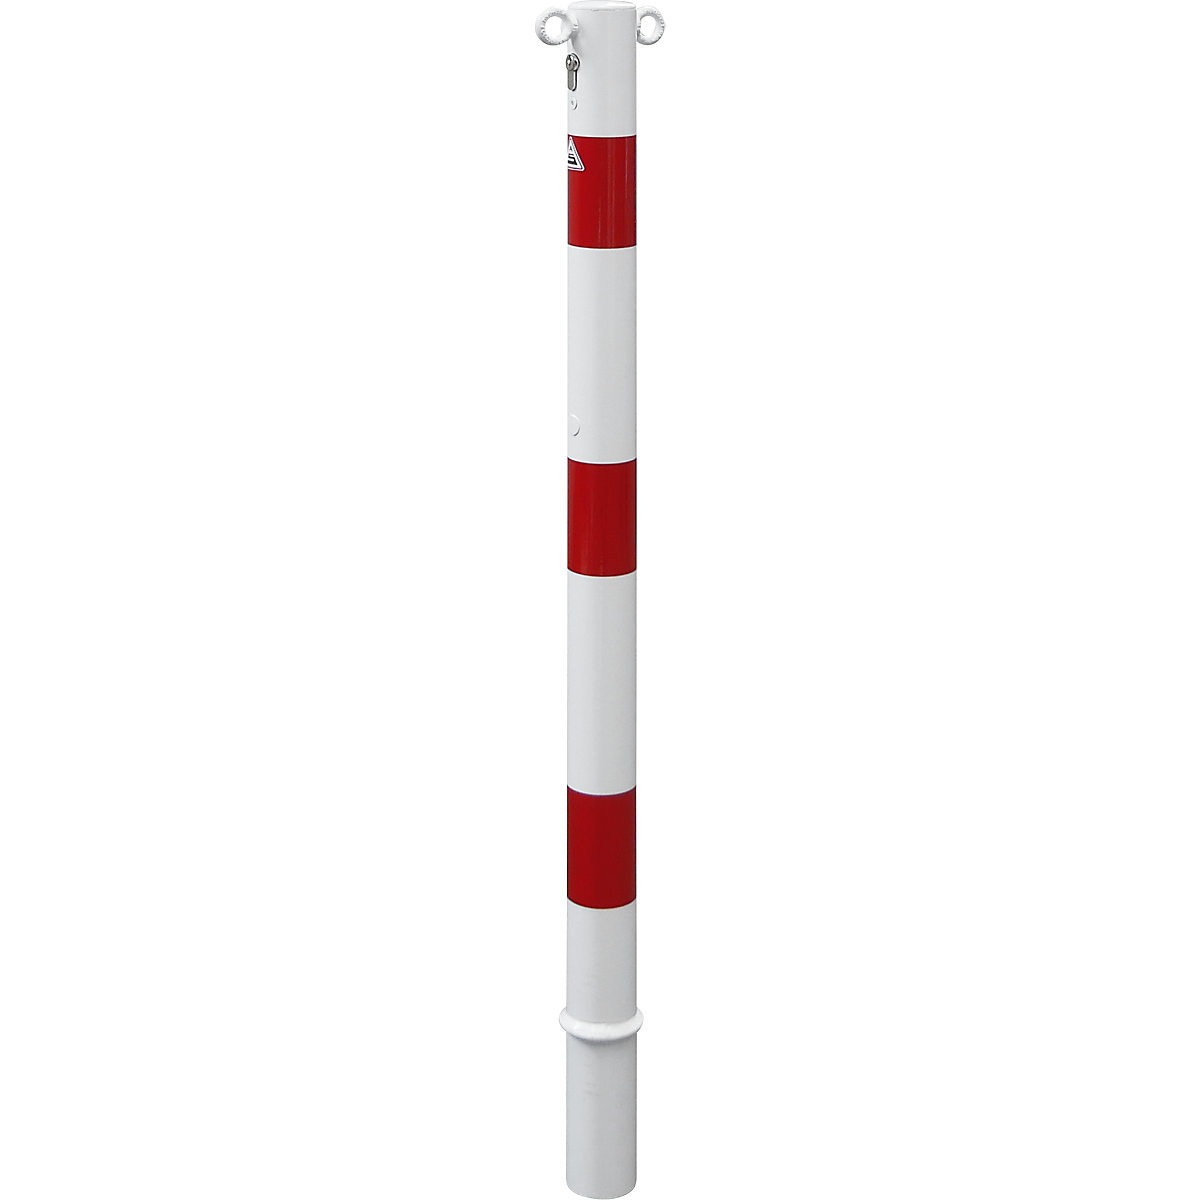 Poste de barreira, Ø 60 mm, branco/vermelho, amovível com cilindro perfilado, com 2 olhais-2